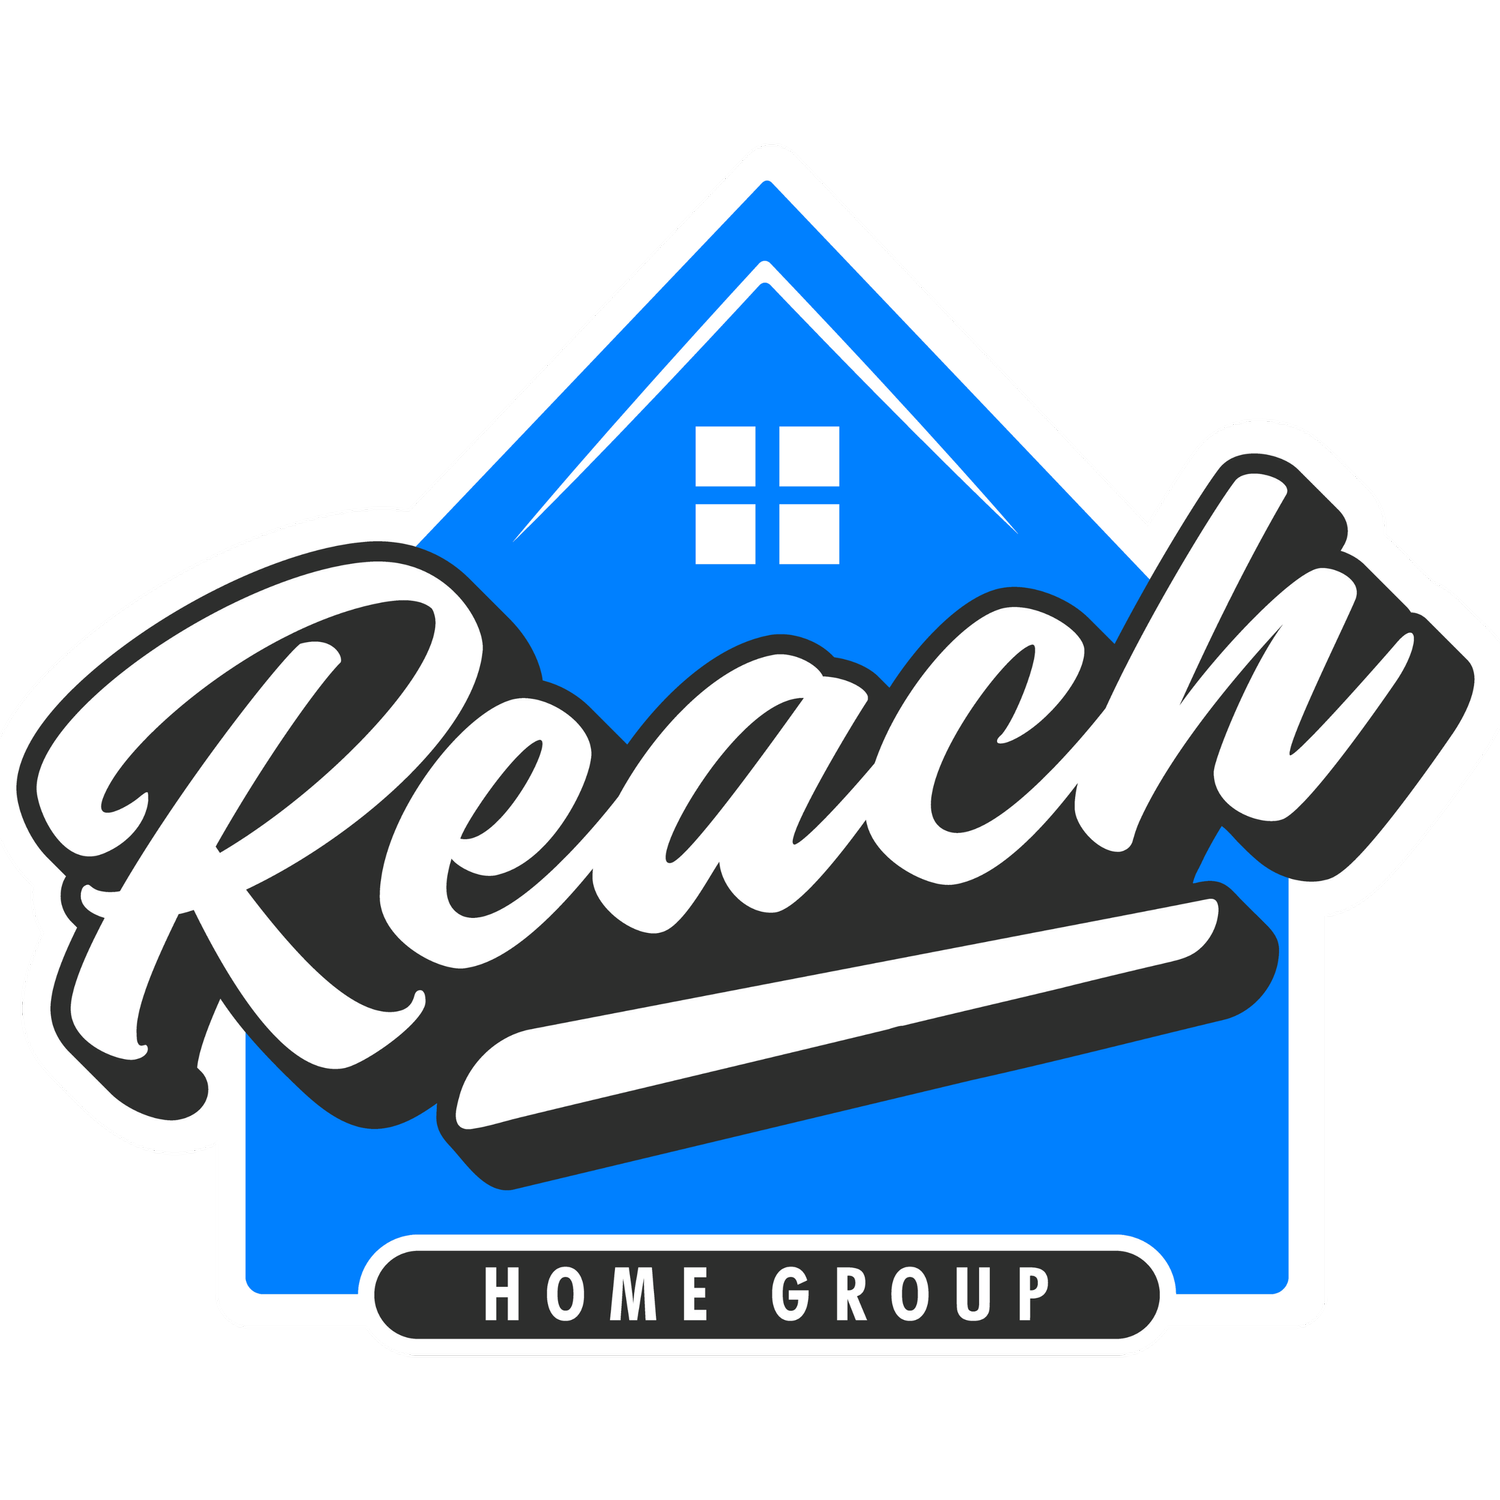 Reach Home Group